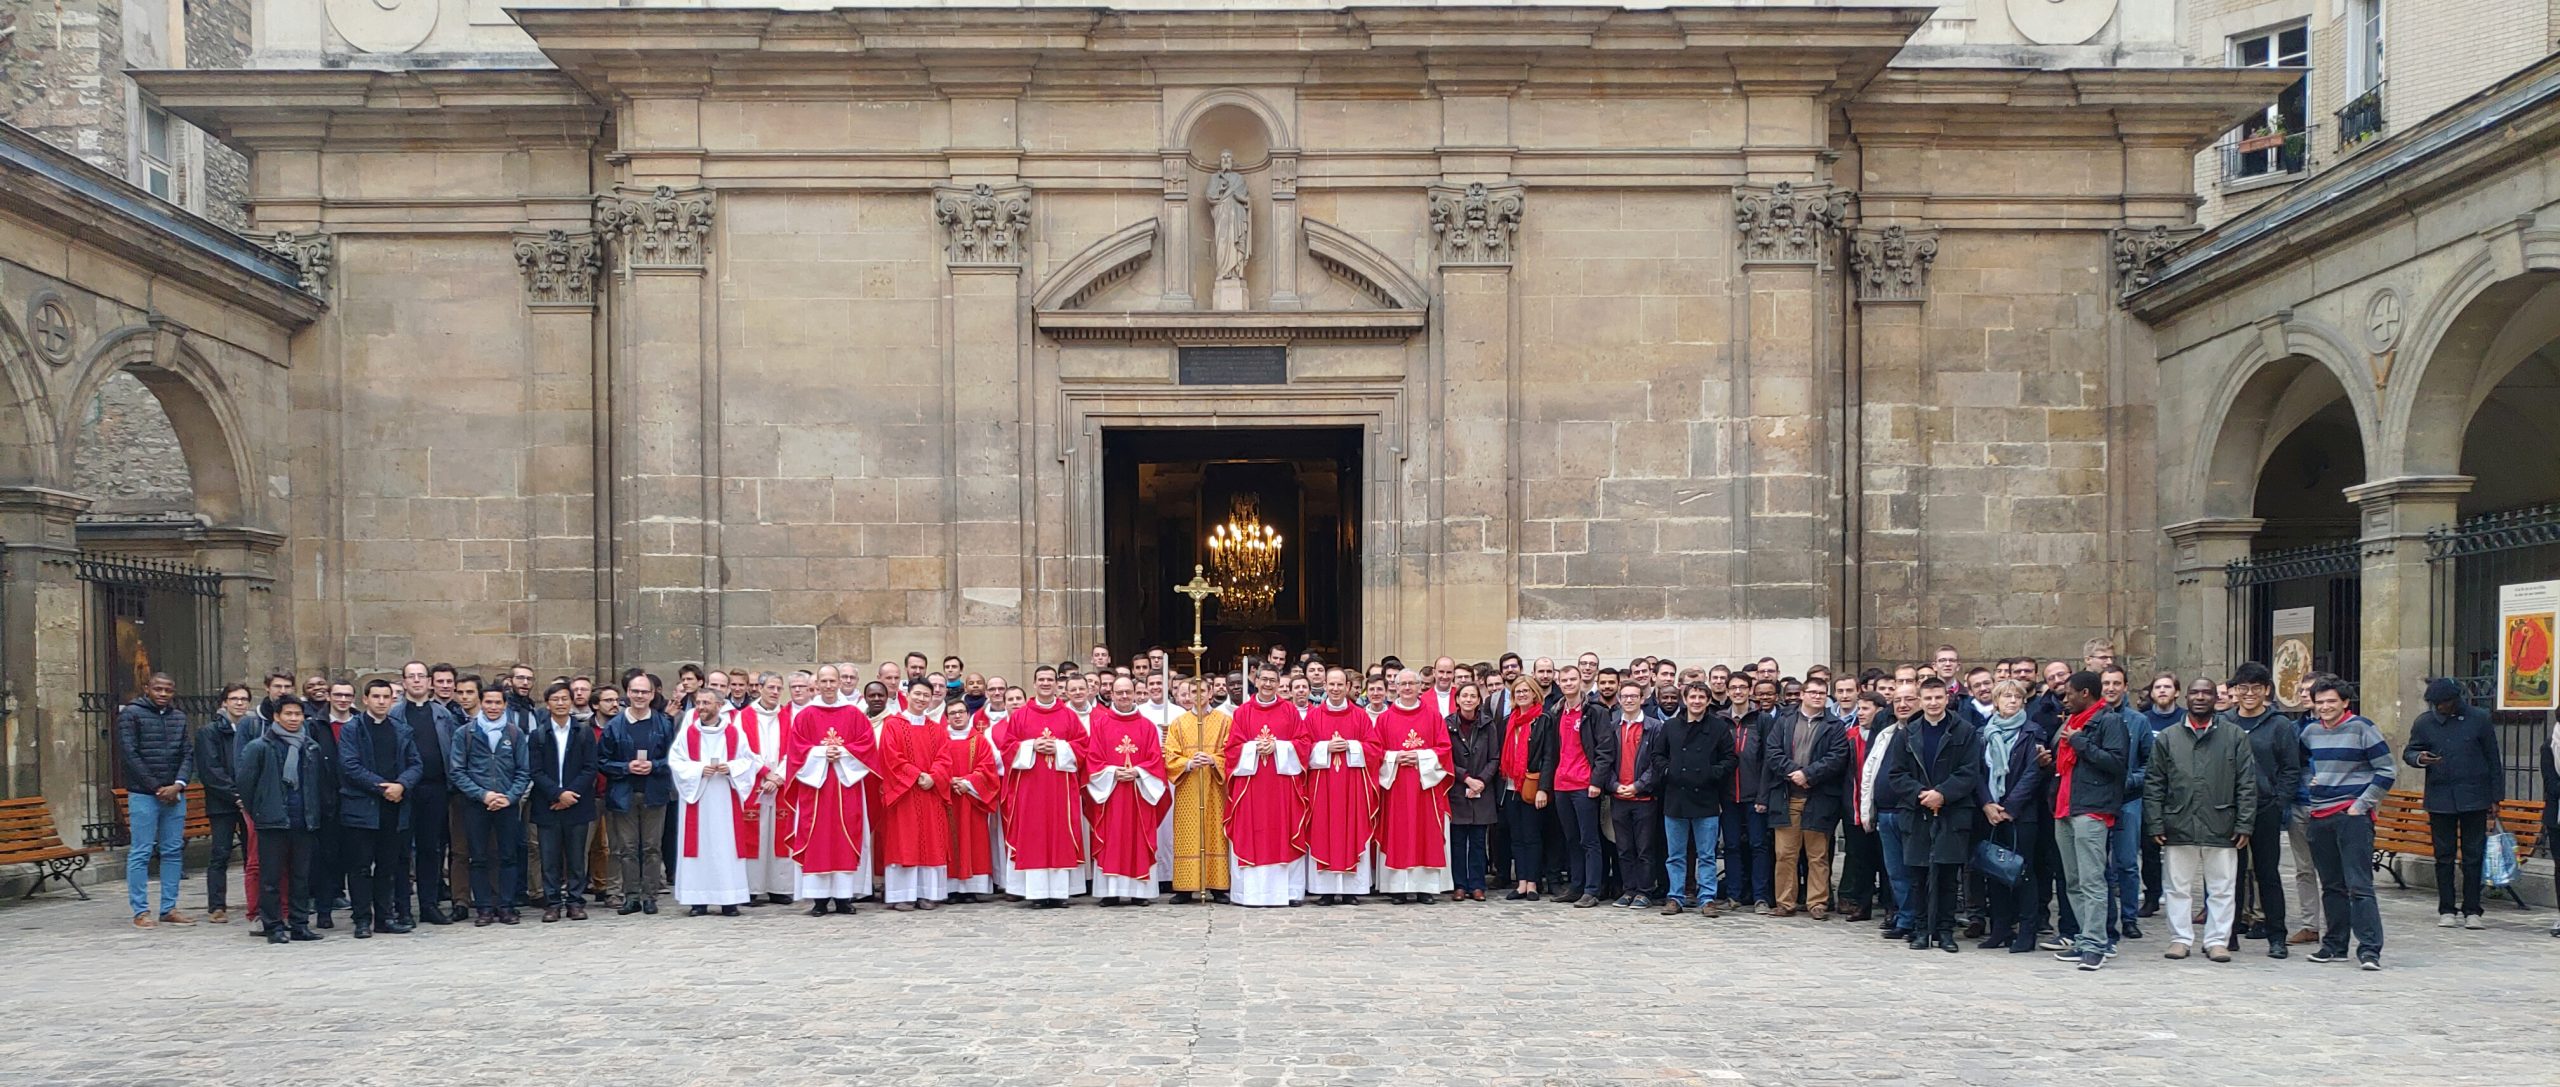 assemblée de prêtres et séminaristes